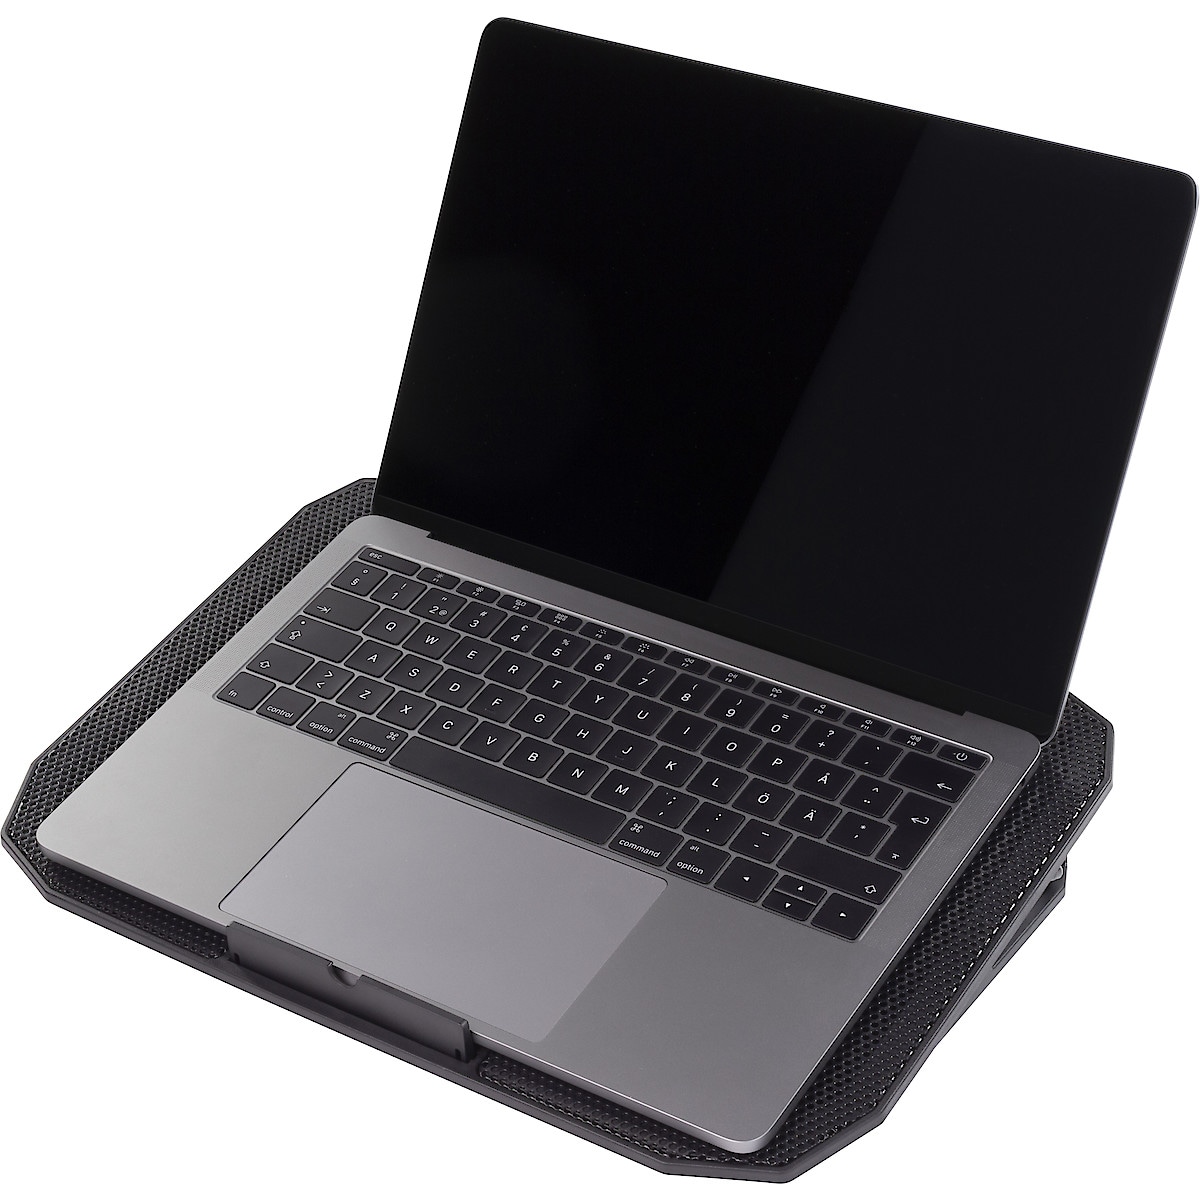 Laptopställ med fläktkylning, Deltaco LTC-100